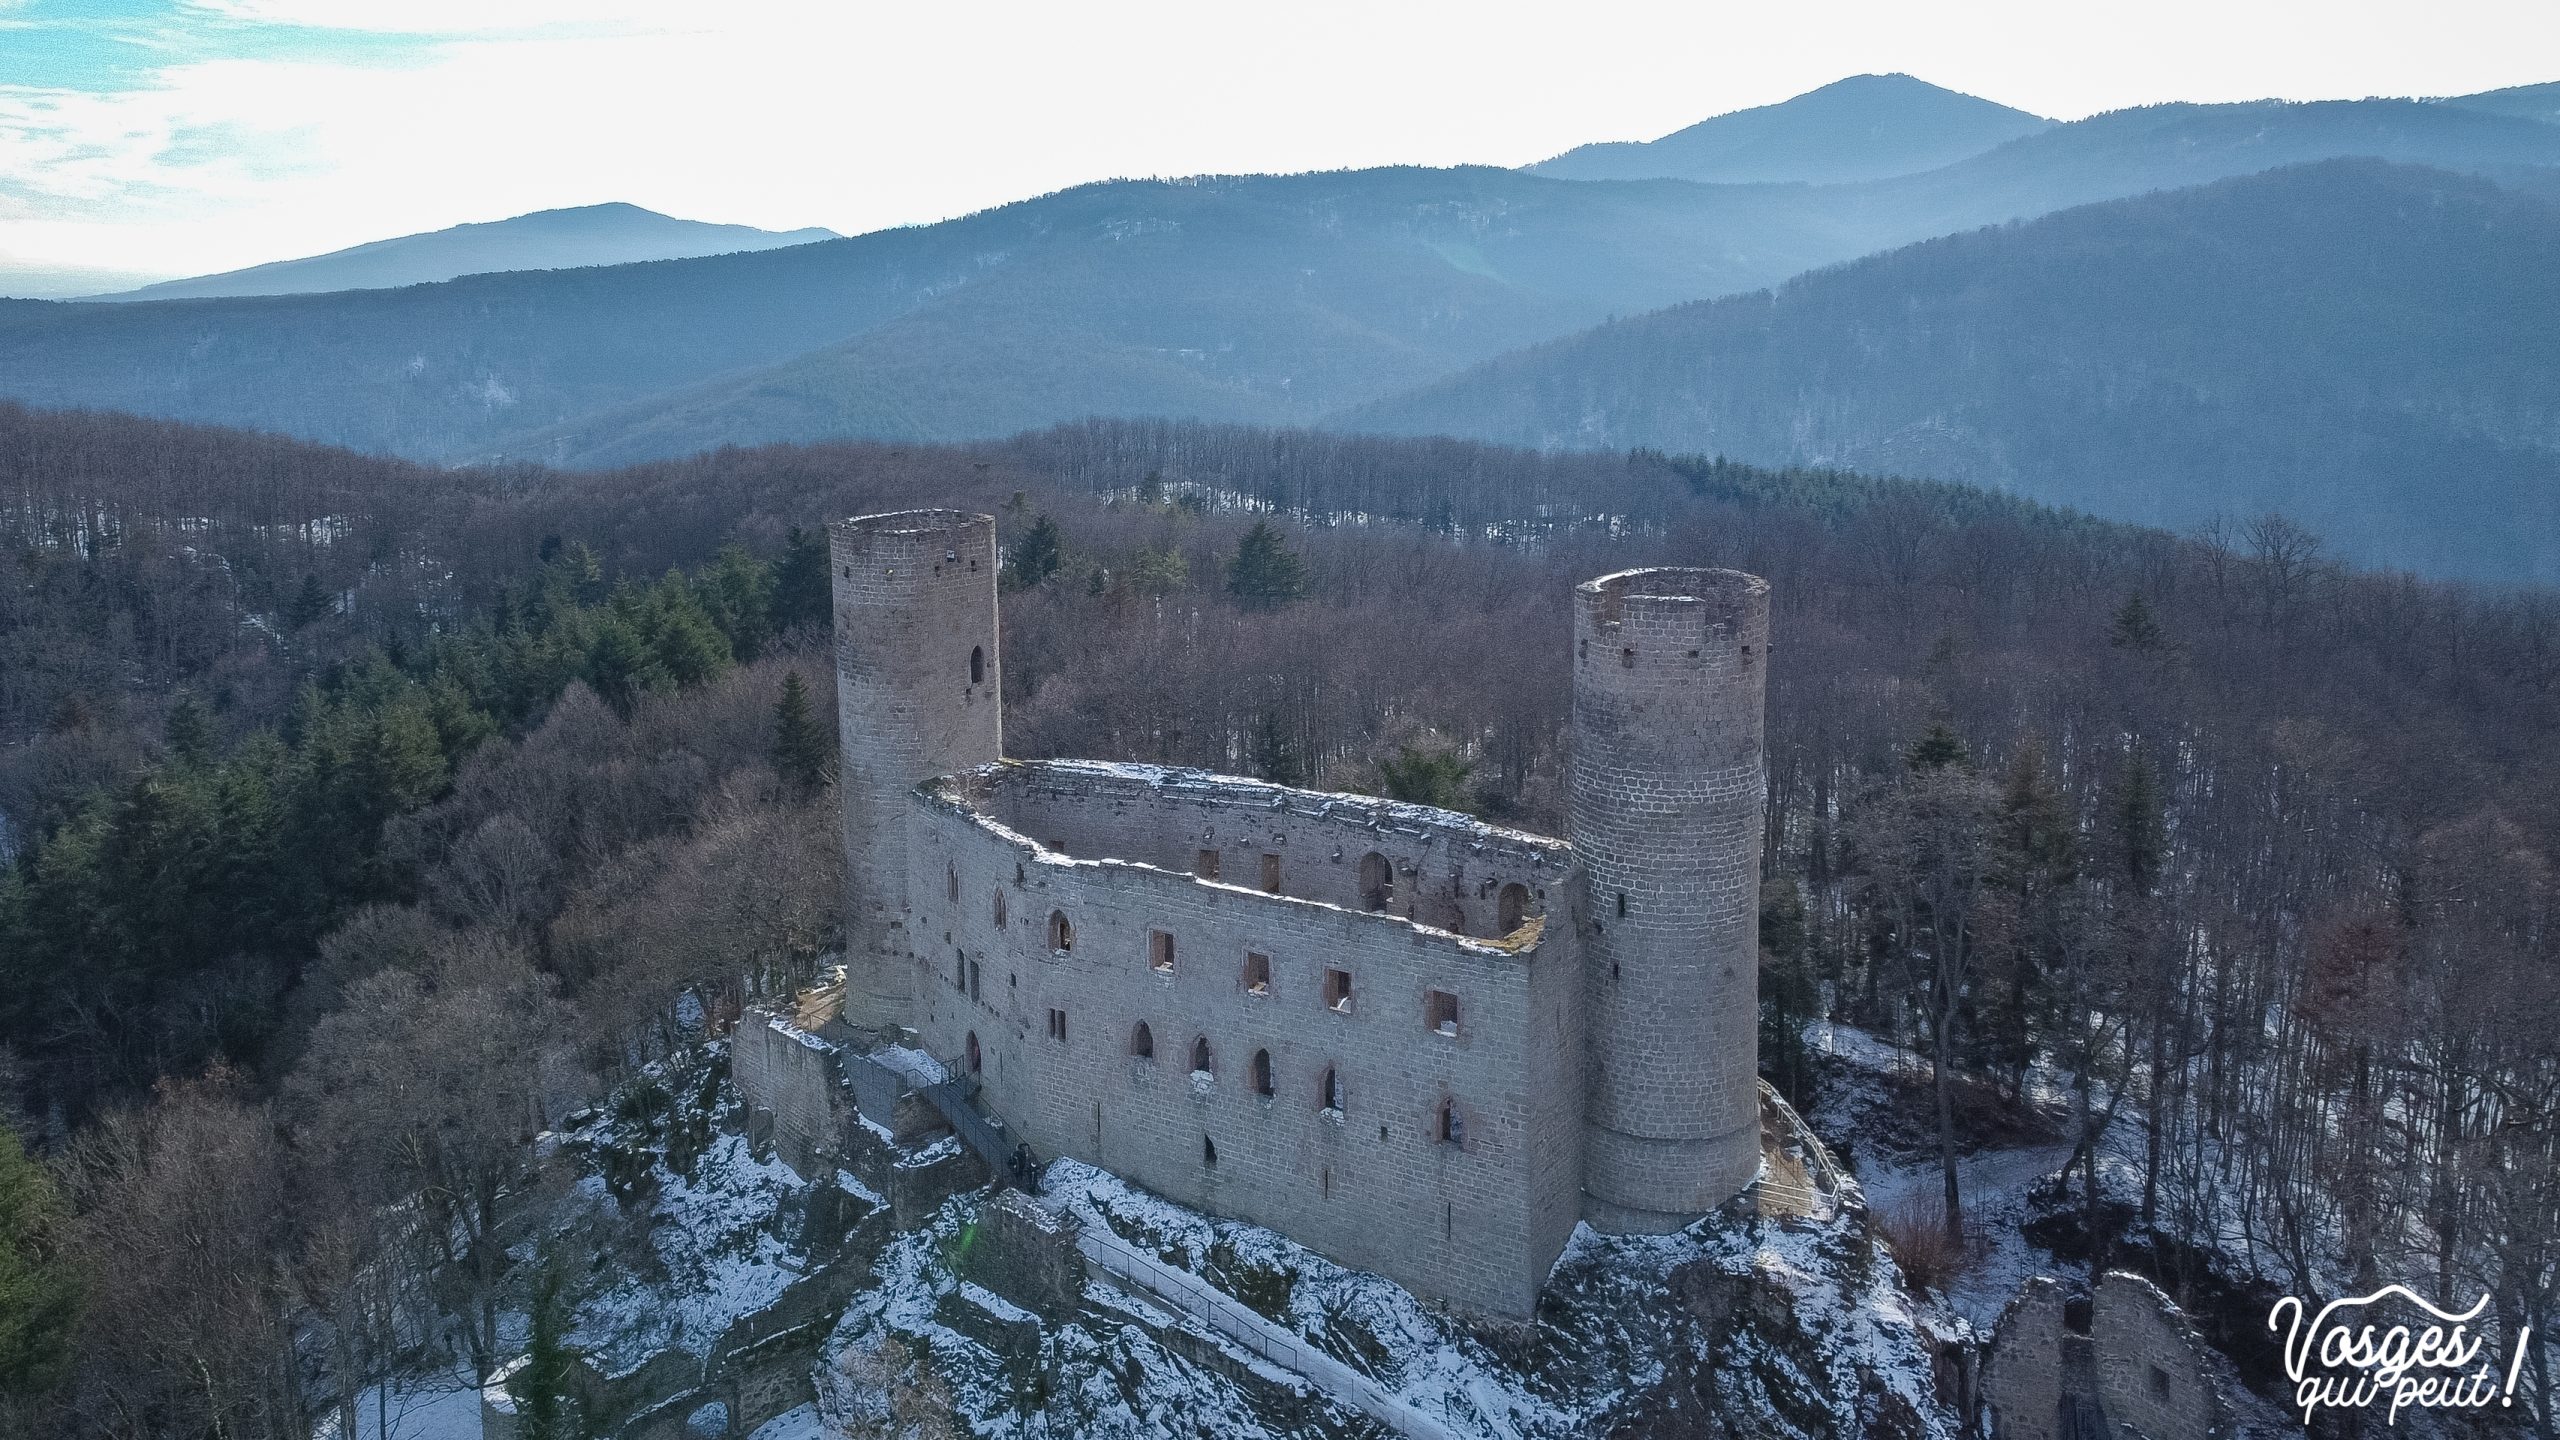 Vue aérienne du château d'Andlau dans les Vosges